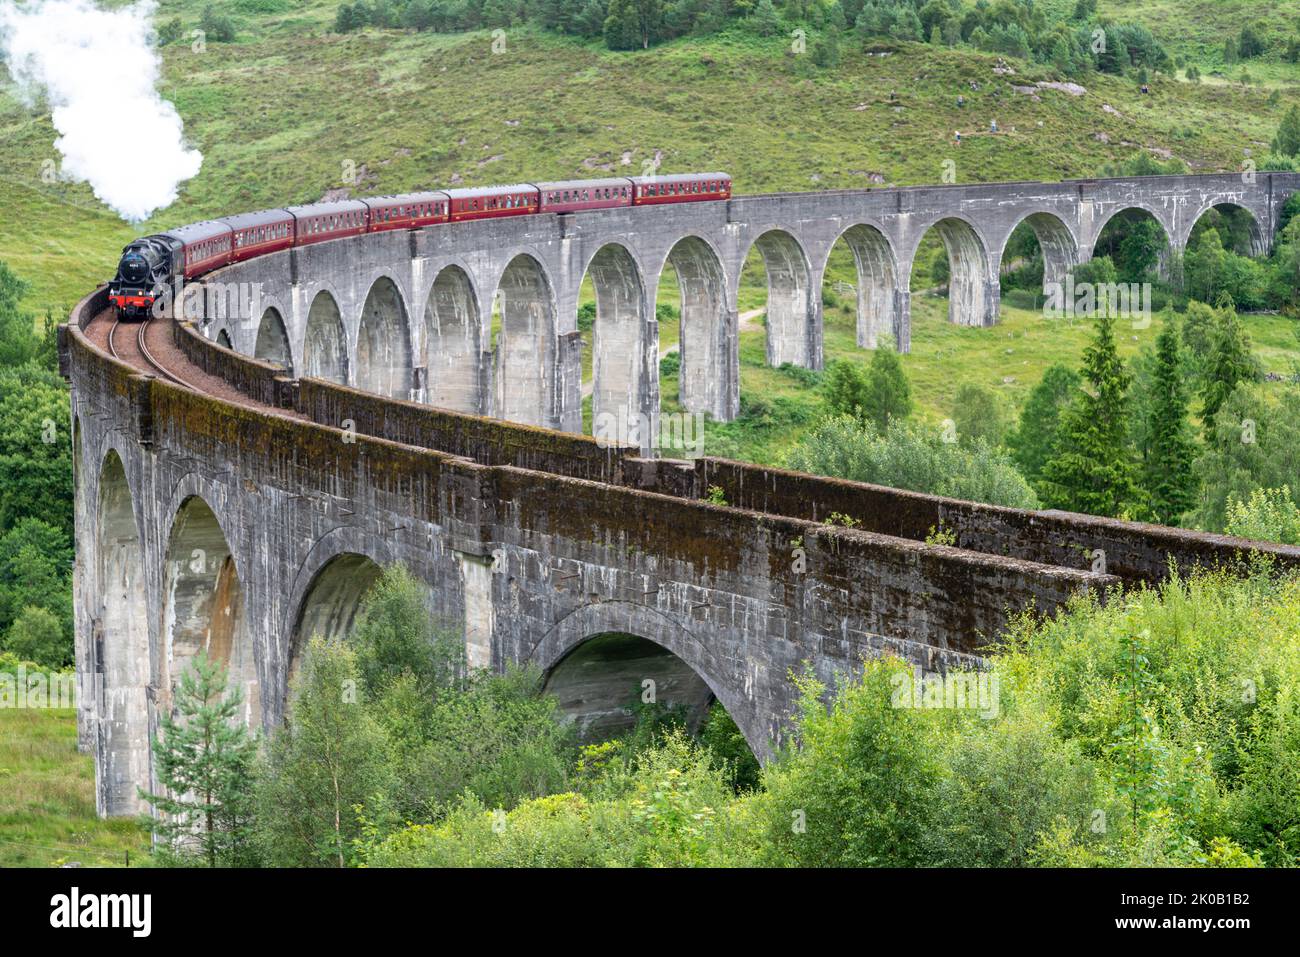 Die Jacobite Dampflokomotive und kunstvolle Kutschen, die die ikonische Viaduktbrücke überqueren, auf der West Highland Line, beliebter Touristenort und Wahrzeichen, Stockfoto